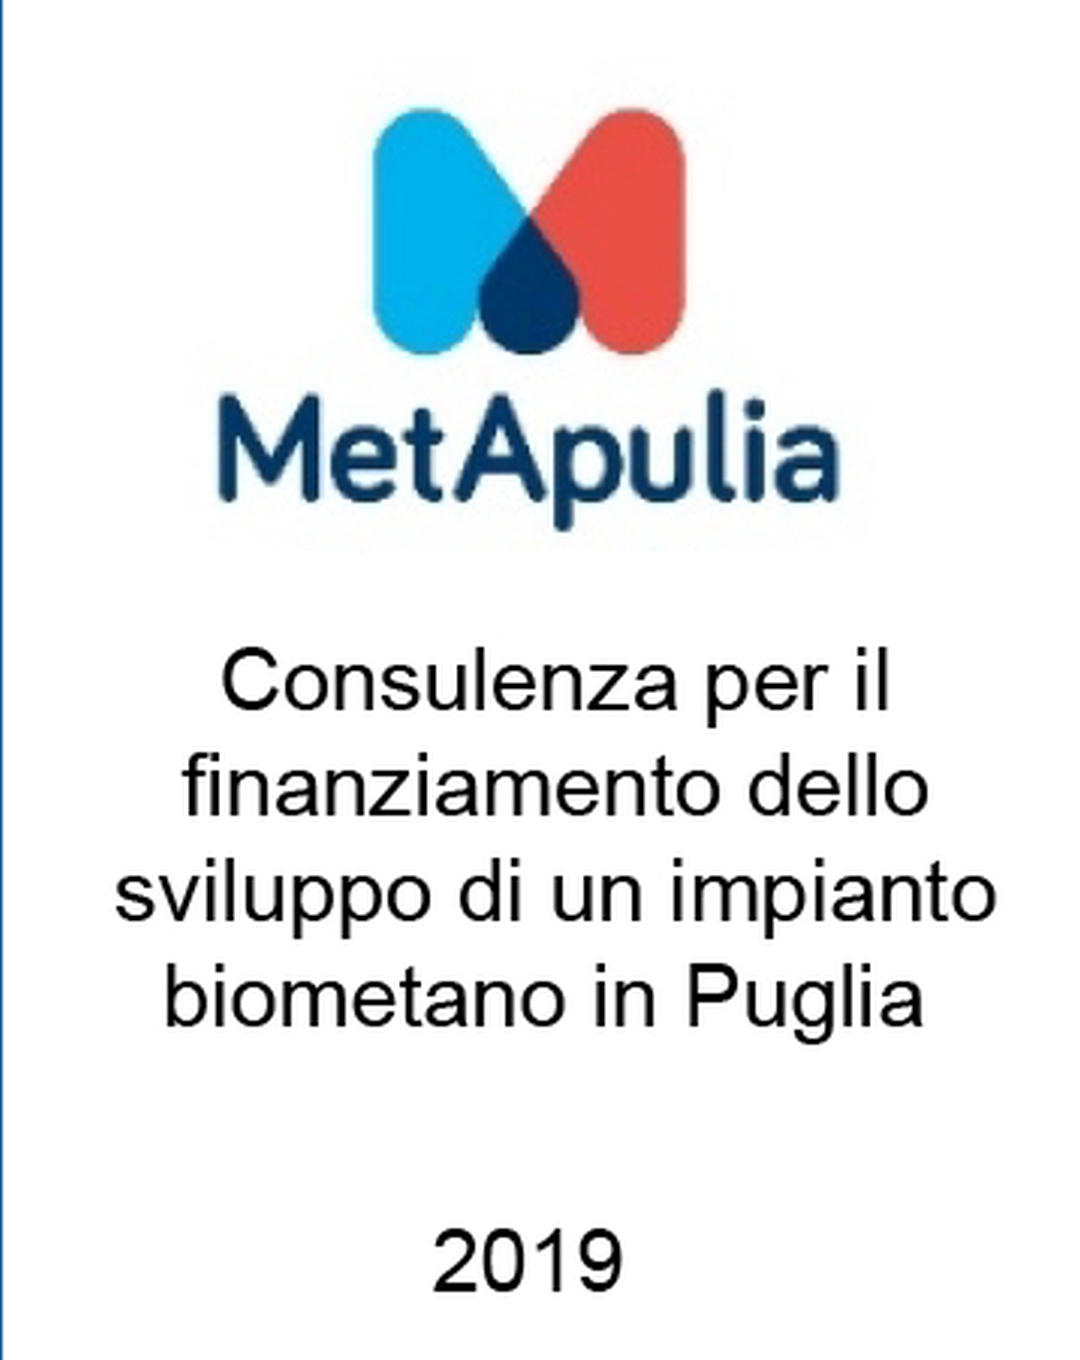 Consulente di MetApulia nello scouting di un partner di capitale e nella raccolta di finanziamenti per lo sviluppo di un progetto di biometano in Puglia. Incarico completato nel 2019